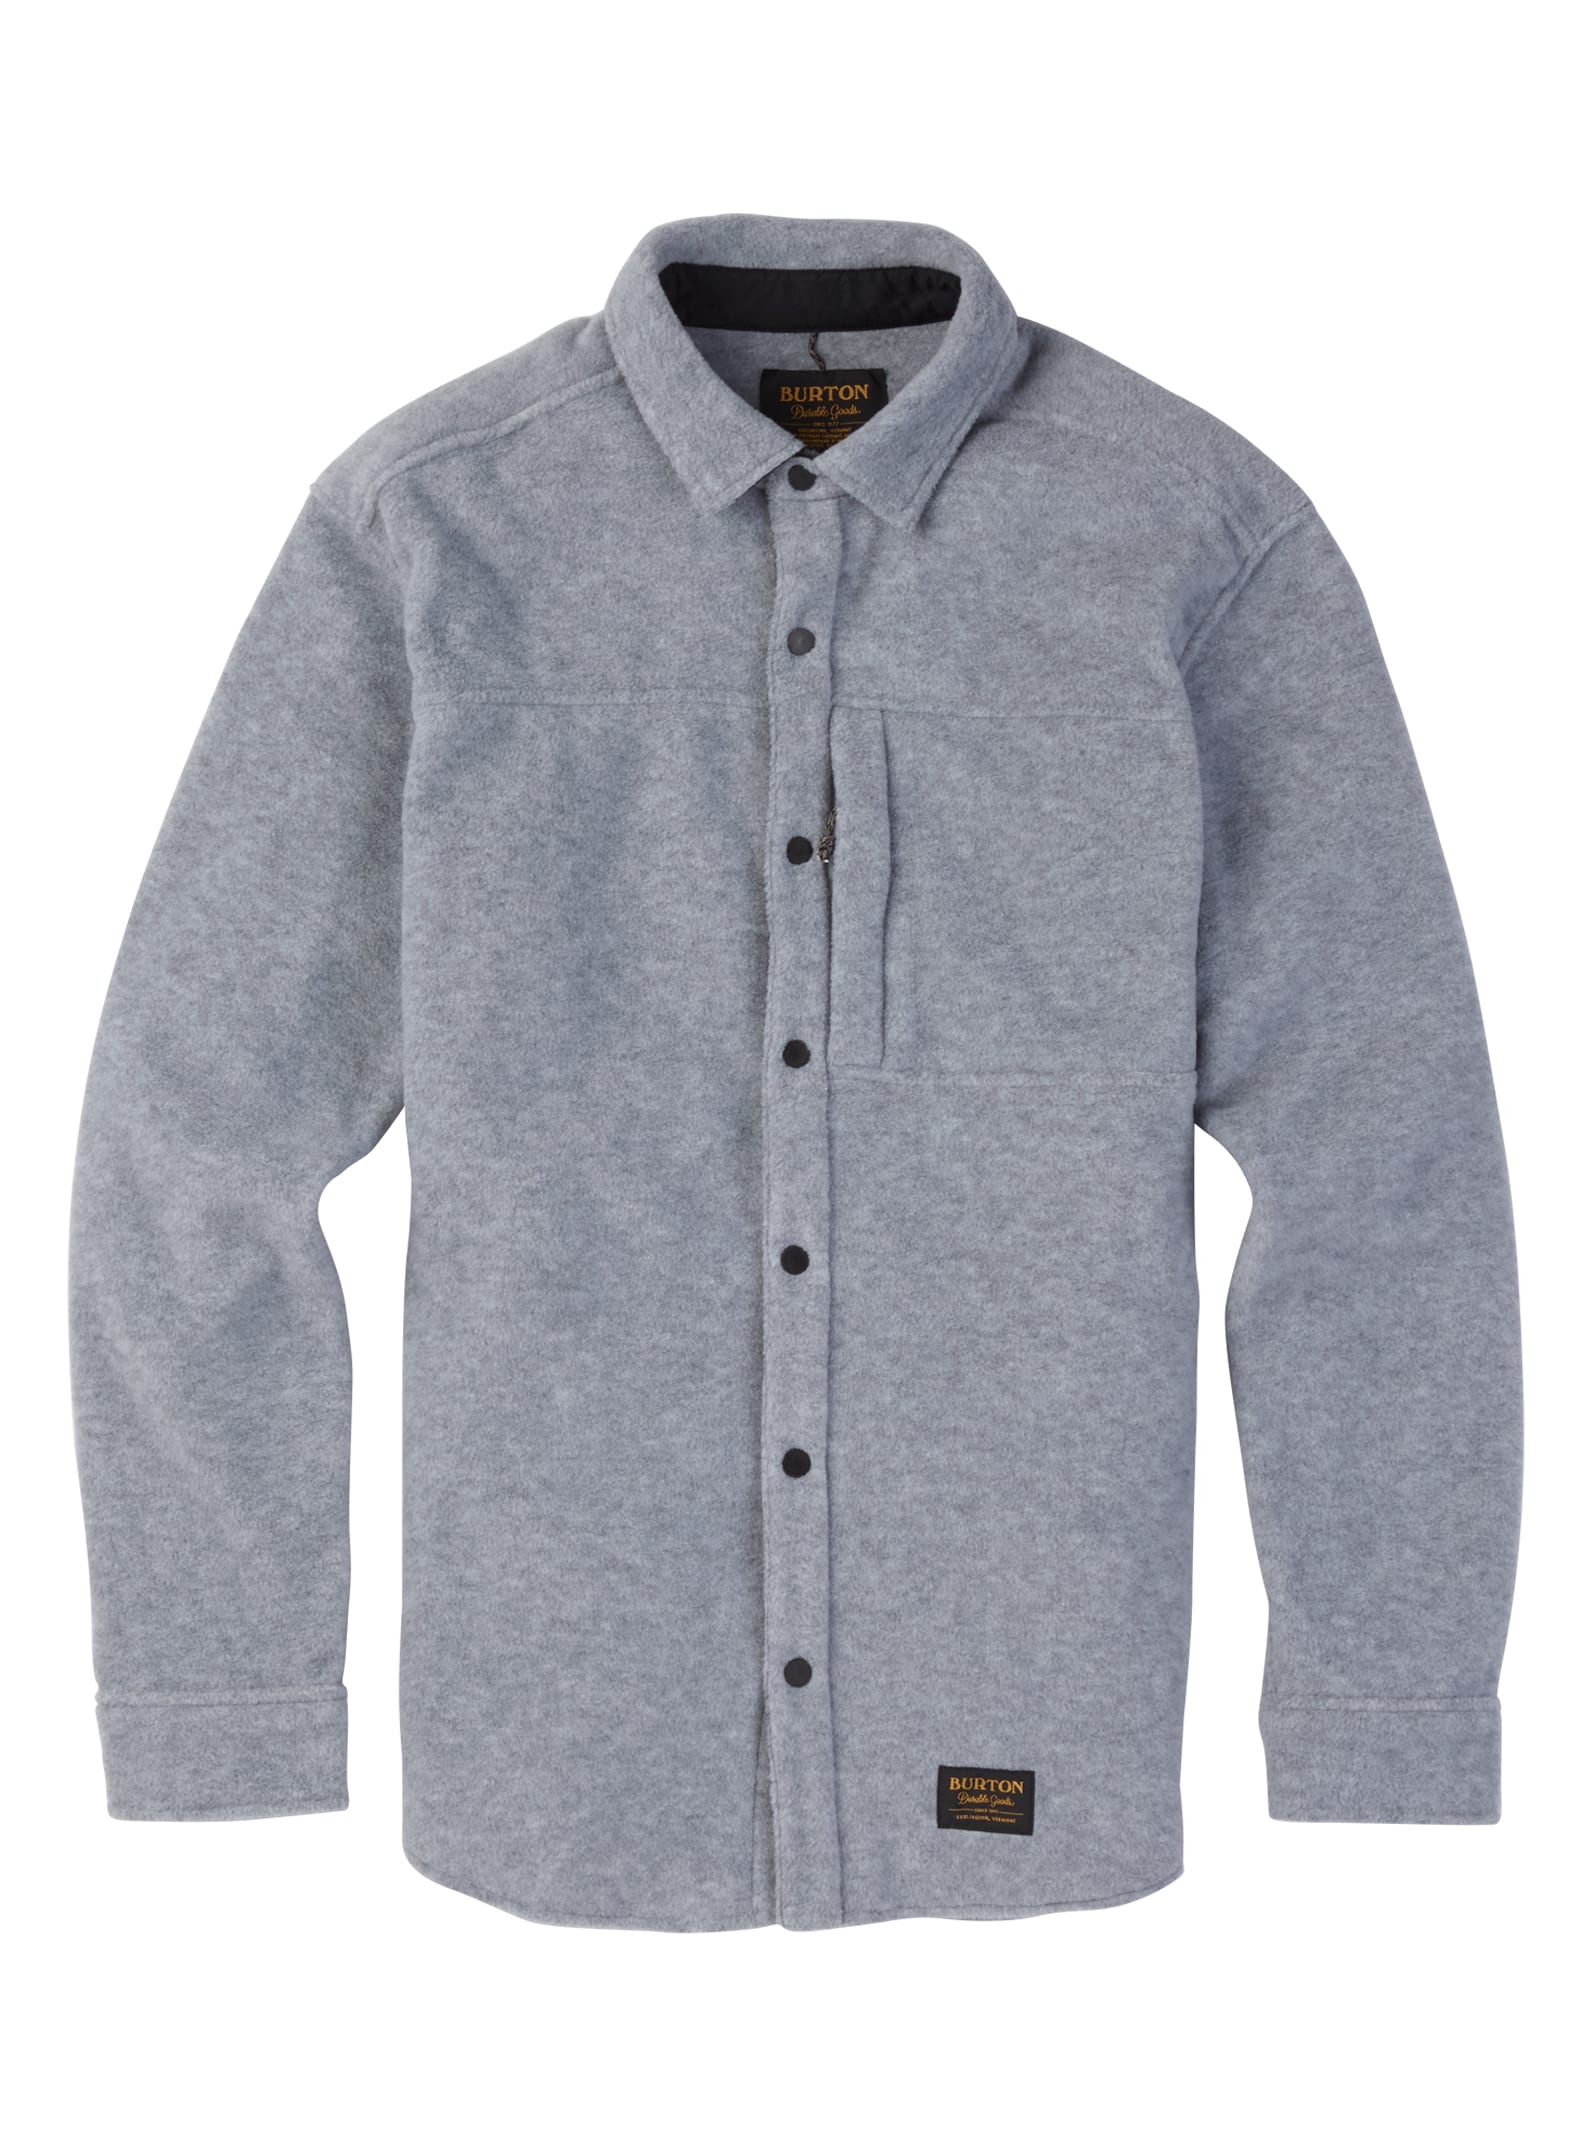 Men's Burton Spillway Fleece Shirt | Burton.com Fall 2019 US